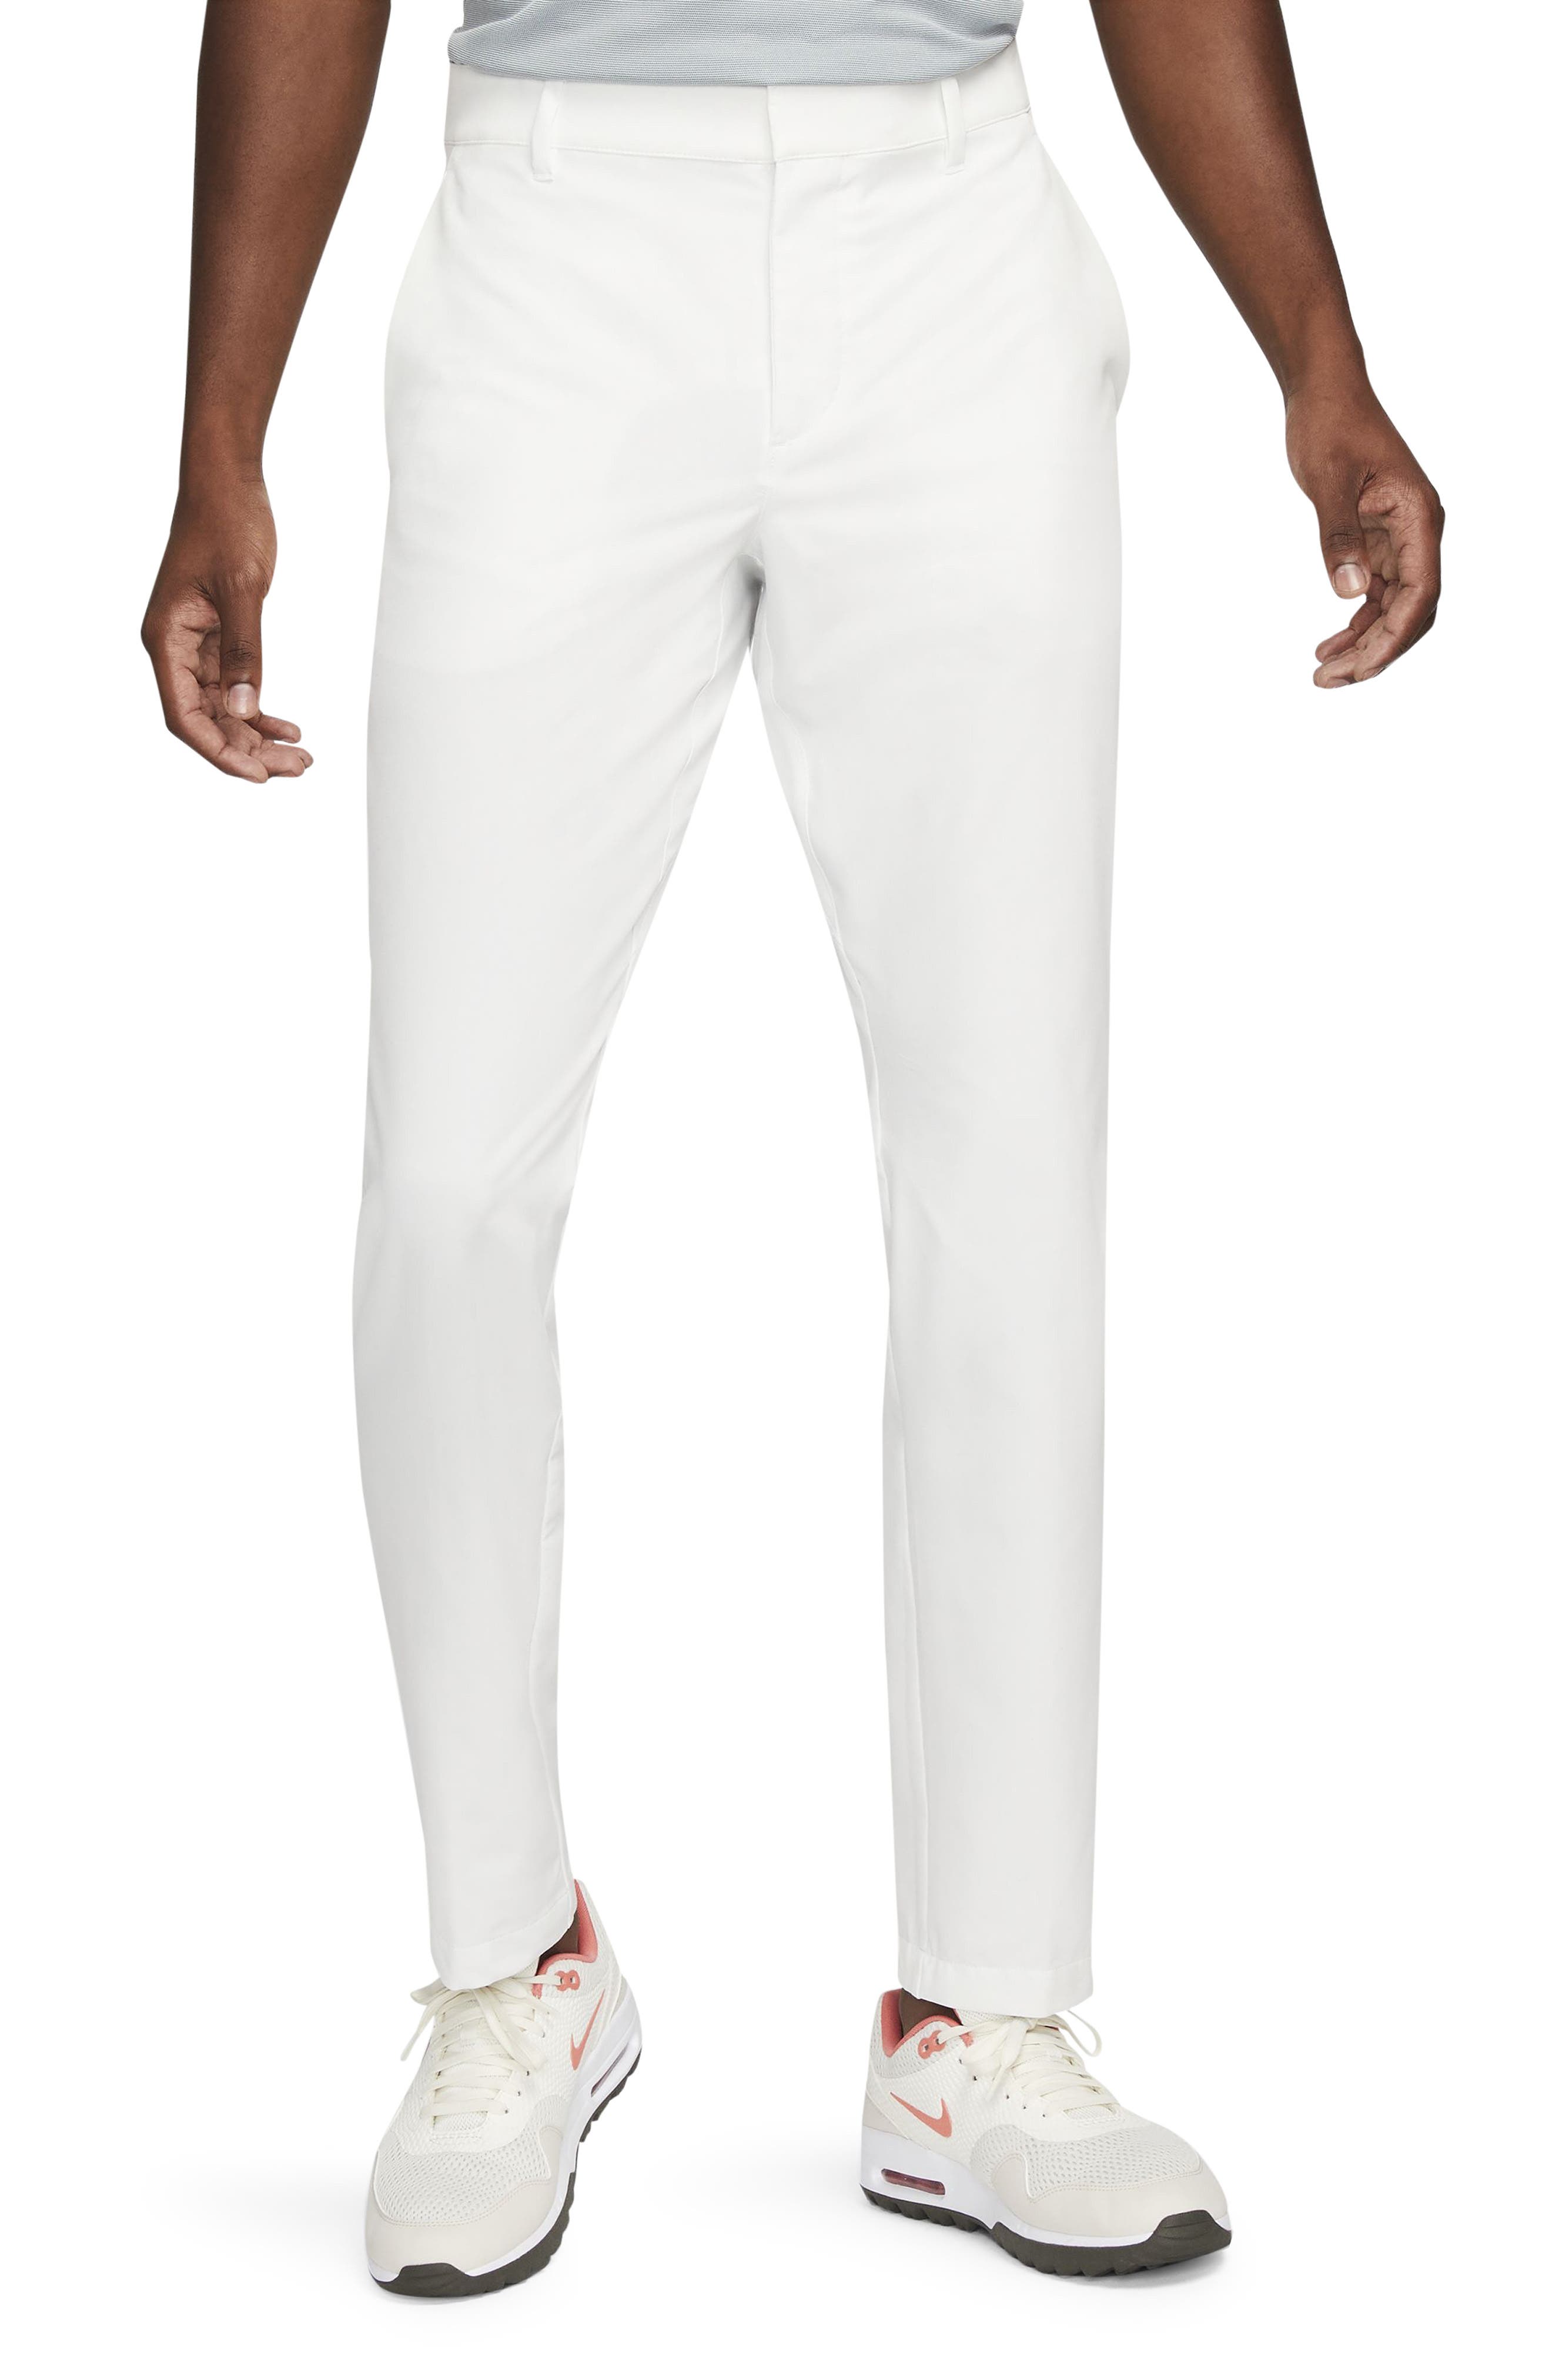 mens white dress pants